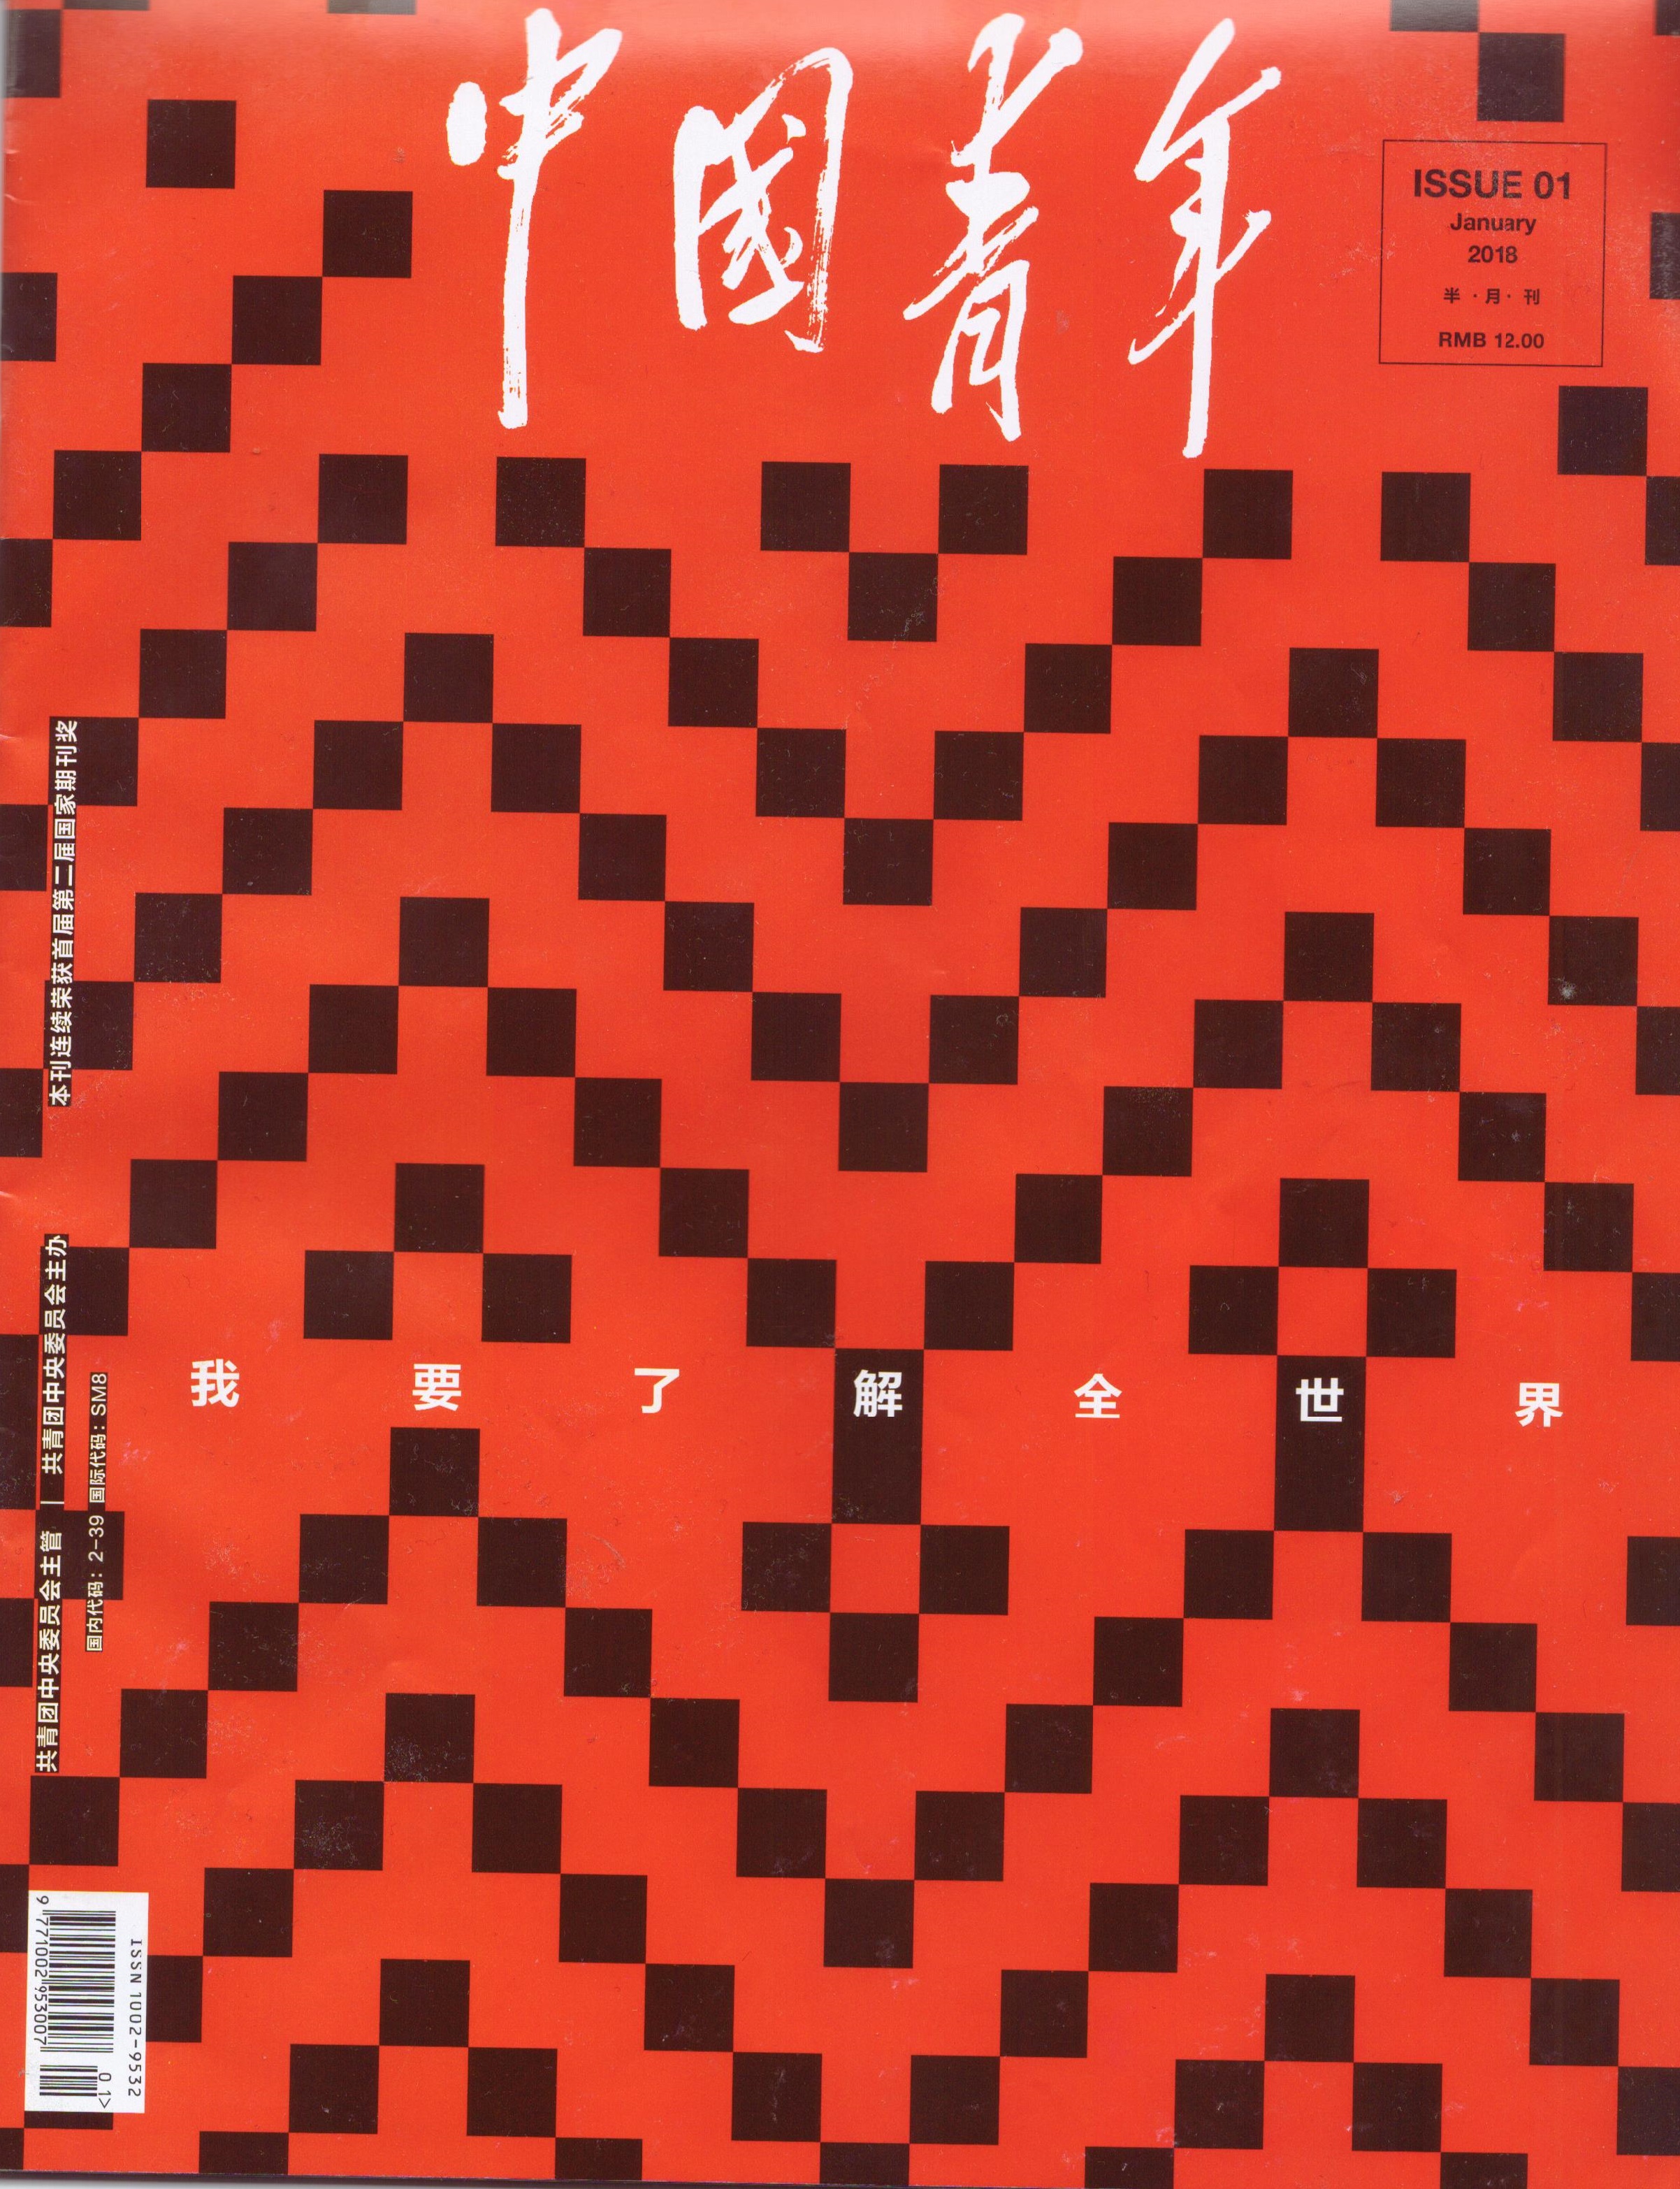 《中国青年》杂志关于科技的采访